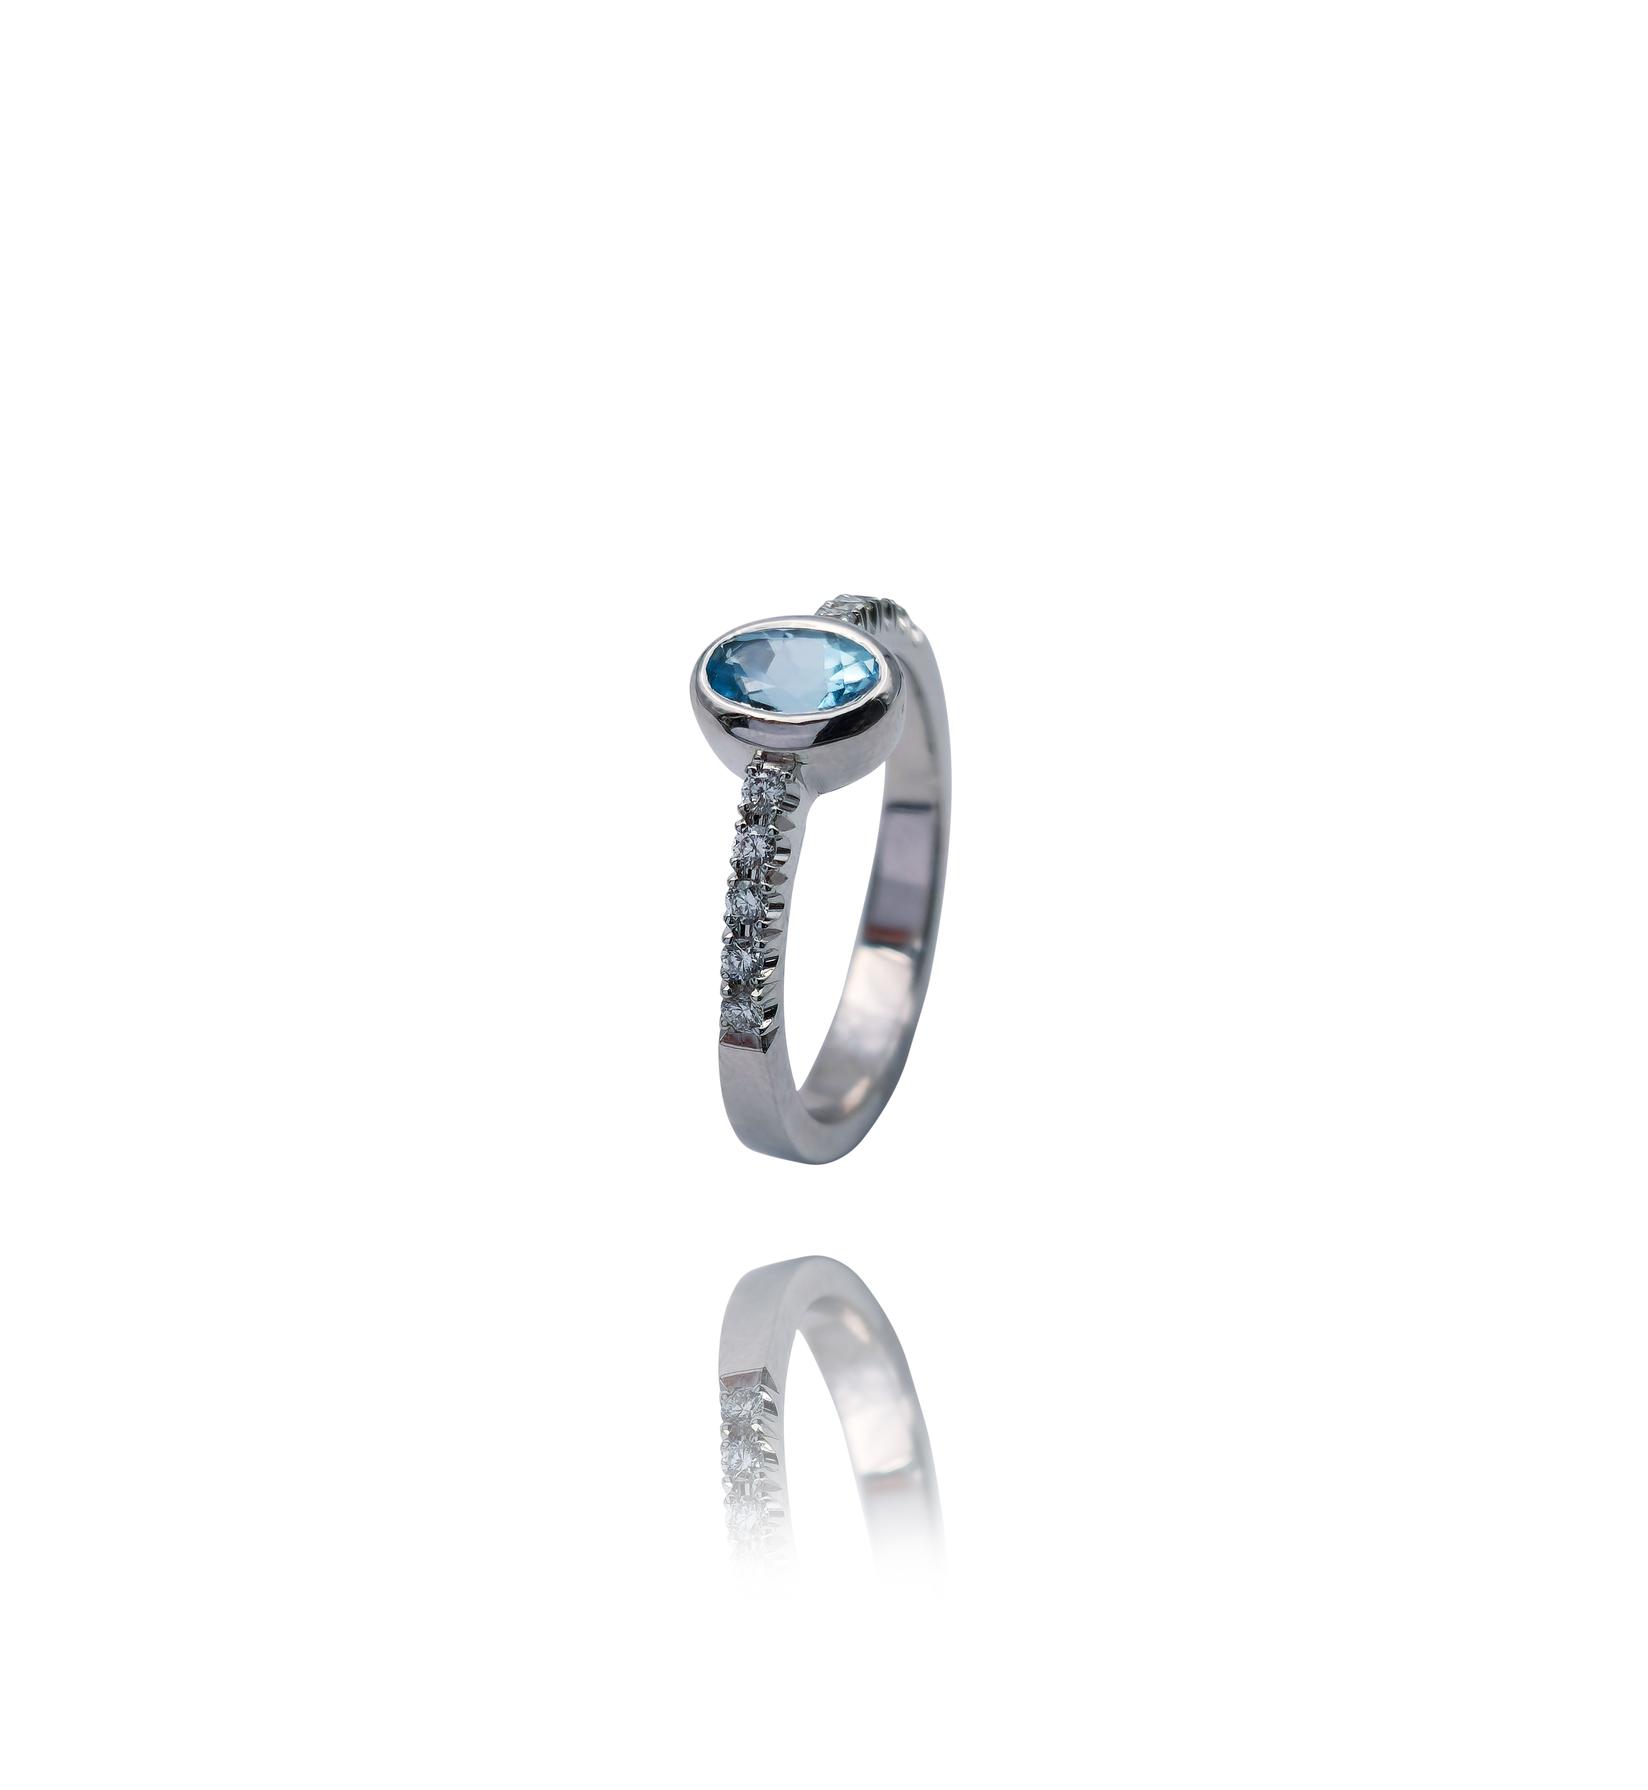 Selected image for Ženski prsten od Belog zlata sa Brilijantima i Akvamarinom, 585, 12mm